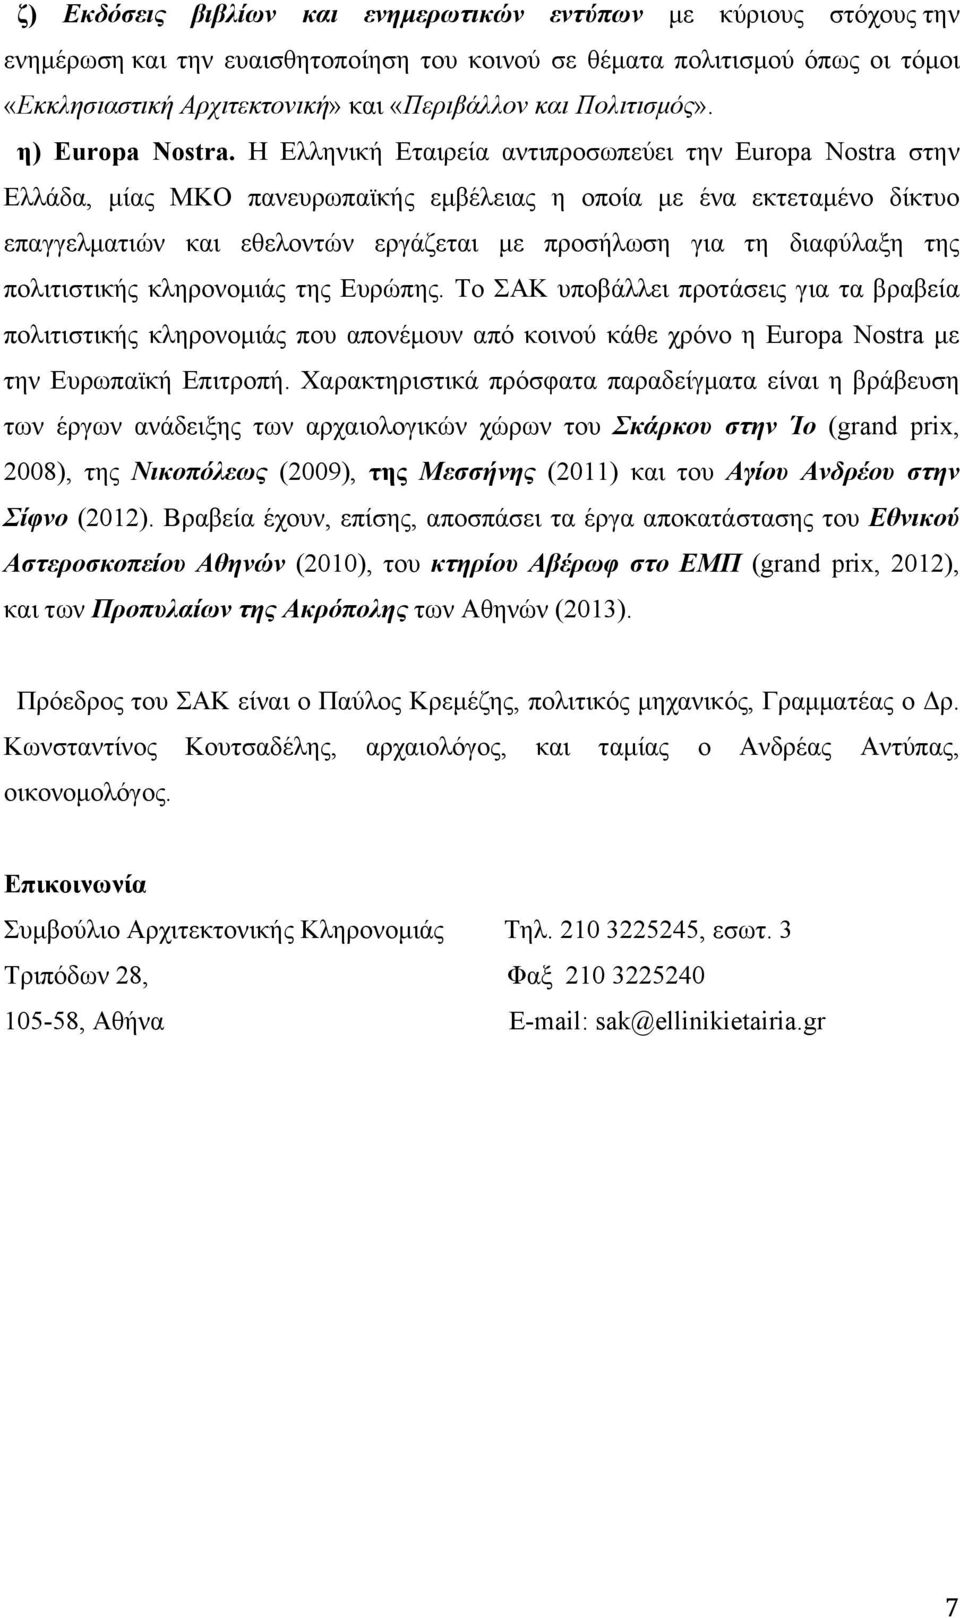 Η Ελληνική Εταιρεία αντιπροσωπεύει την Europa Nostra στην Ελλάδα, µίας ΜΚΟ πανευρωπαϊκής εµβέλειας η οποία µε ένα εκτεταµένο δίκτυο επαγγελµατιών και εθελοντών εργάζεται µε προσήλωση για τη διαφύλαξη